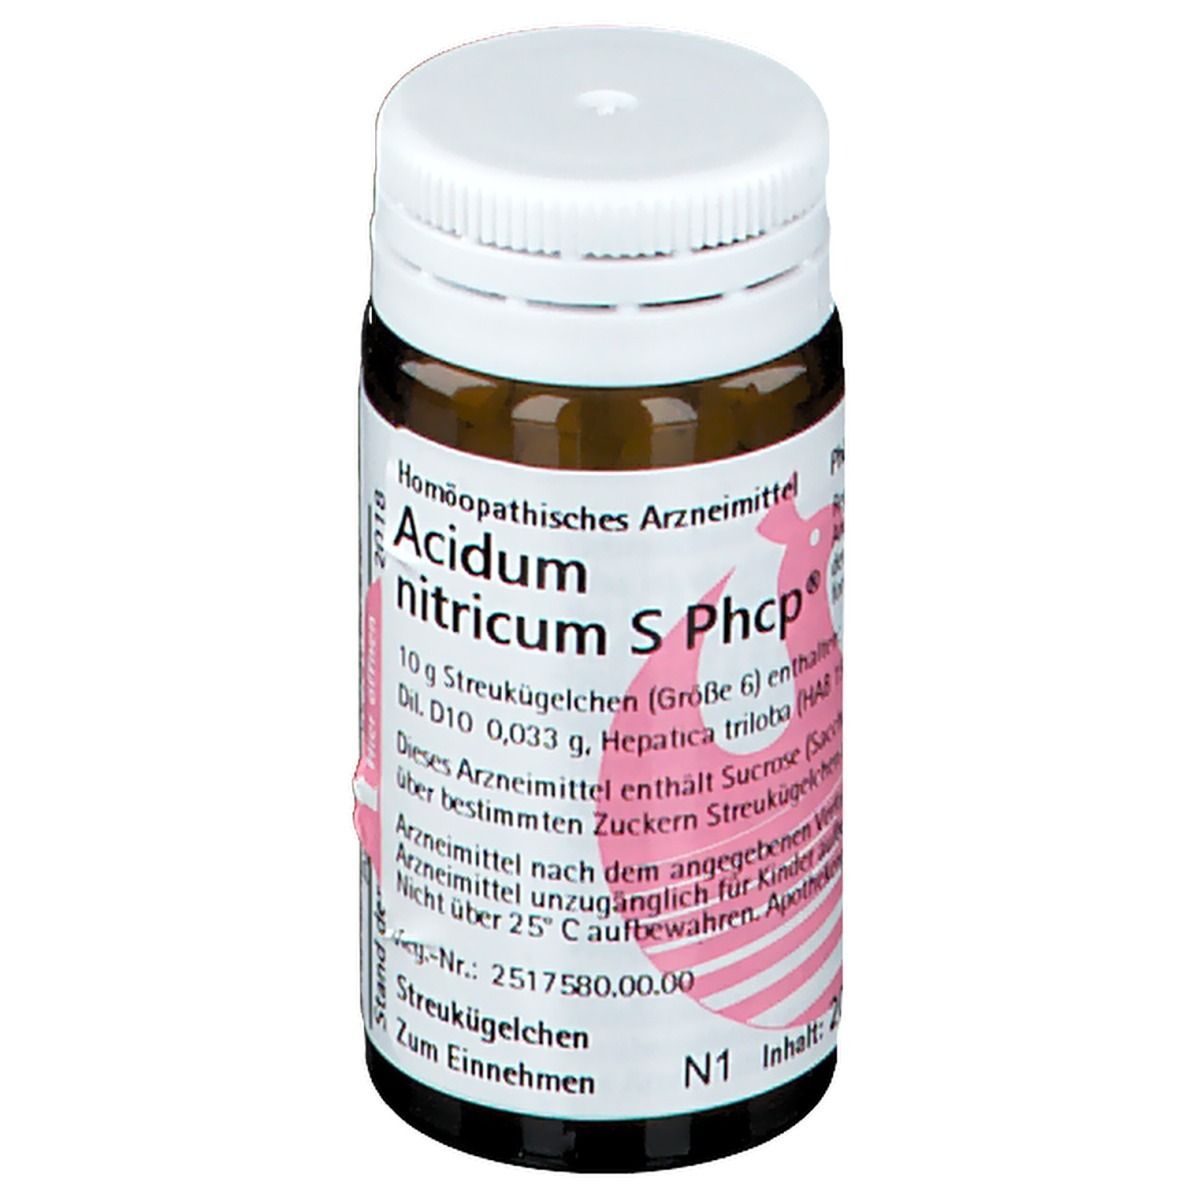 Acidum nitricum S Phcp®